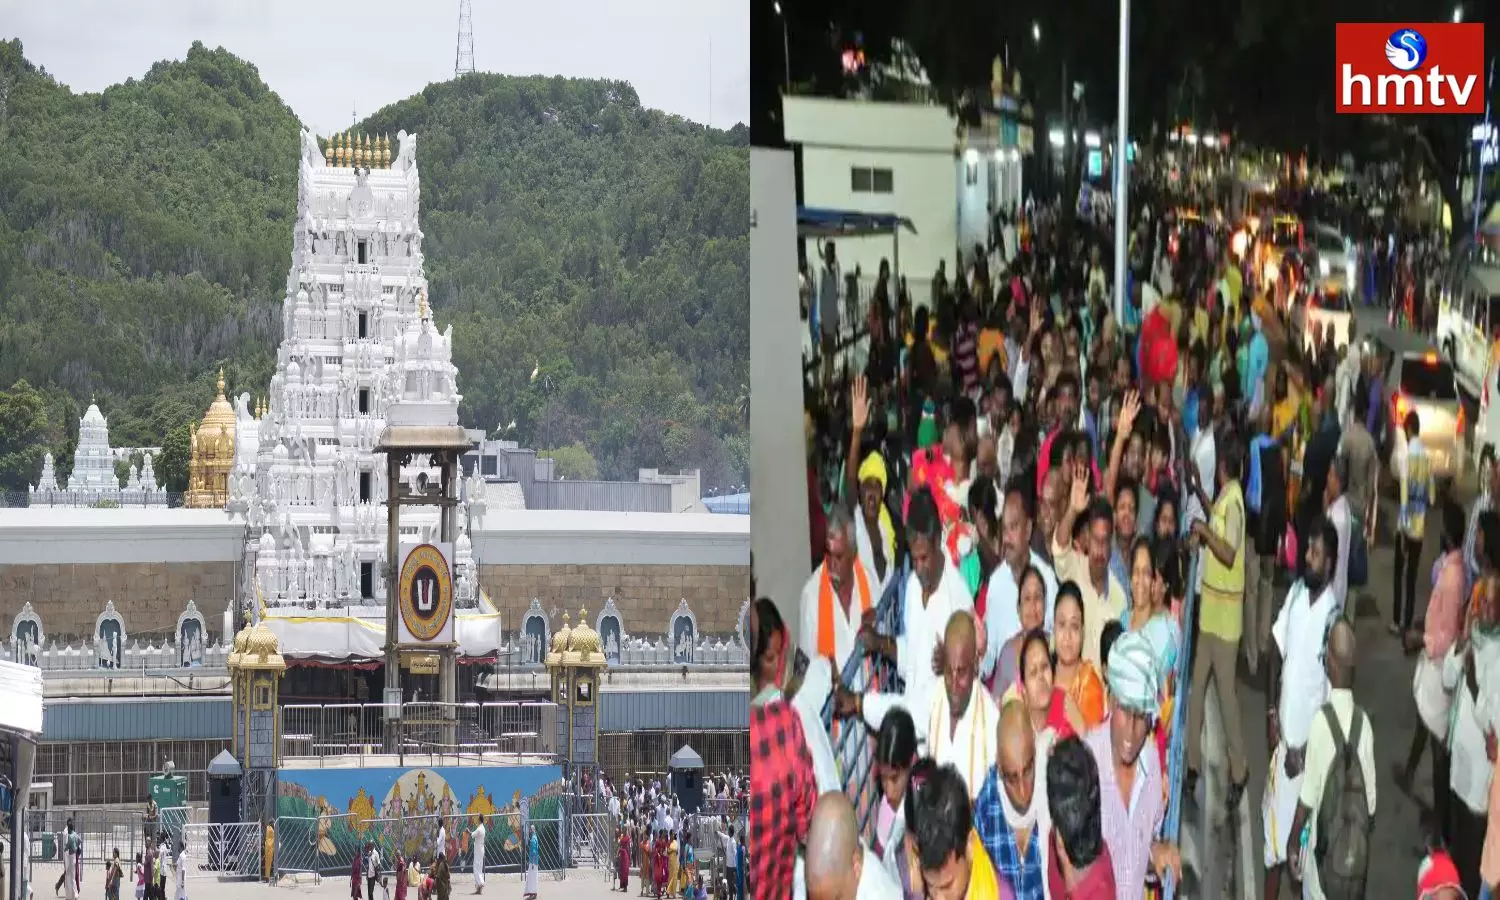 the number of devotees has increased in Tirumala